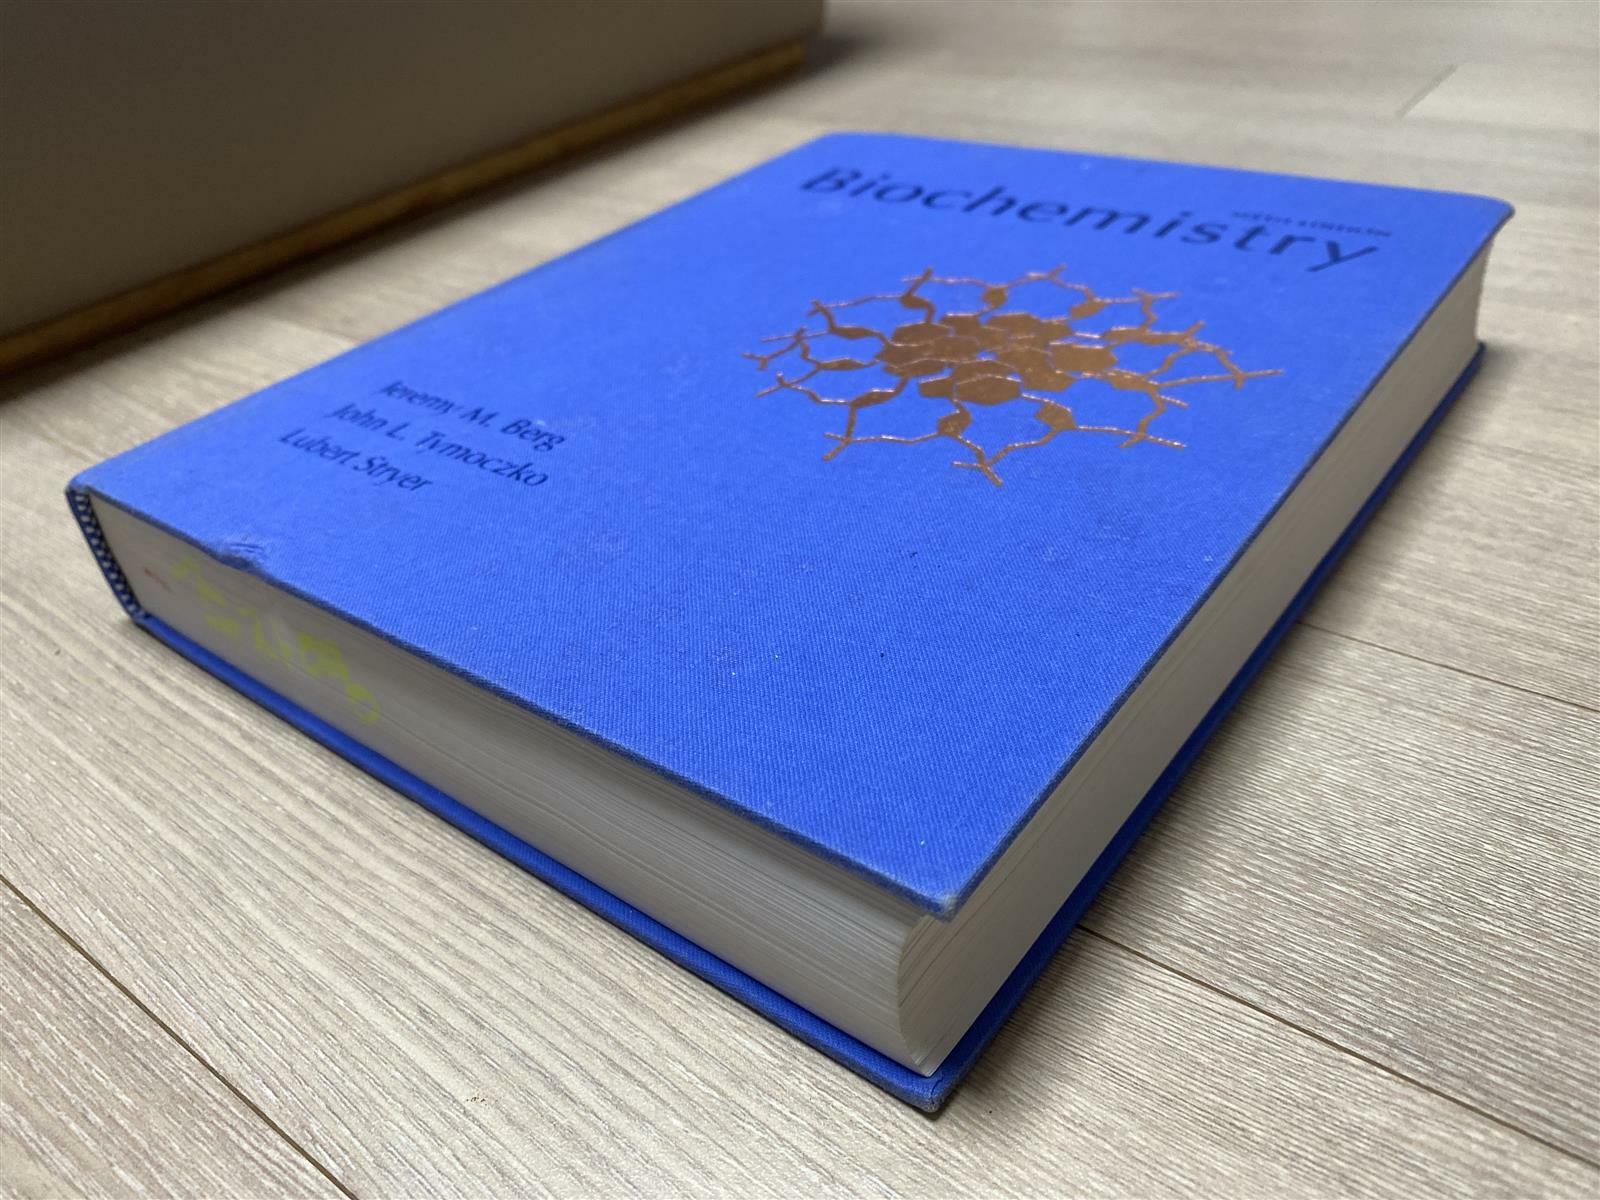 [중고] Biochemistry (6th Editiion, Hardcover)